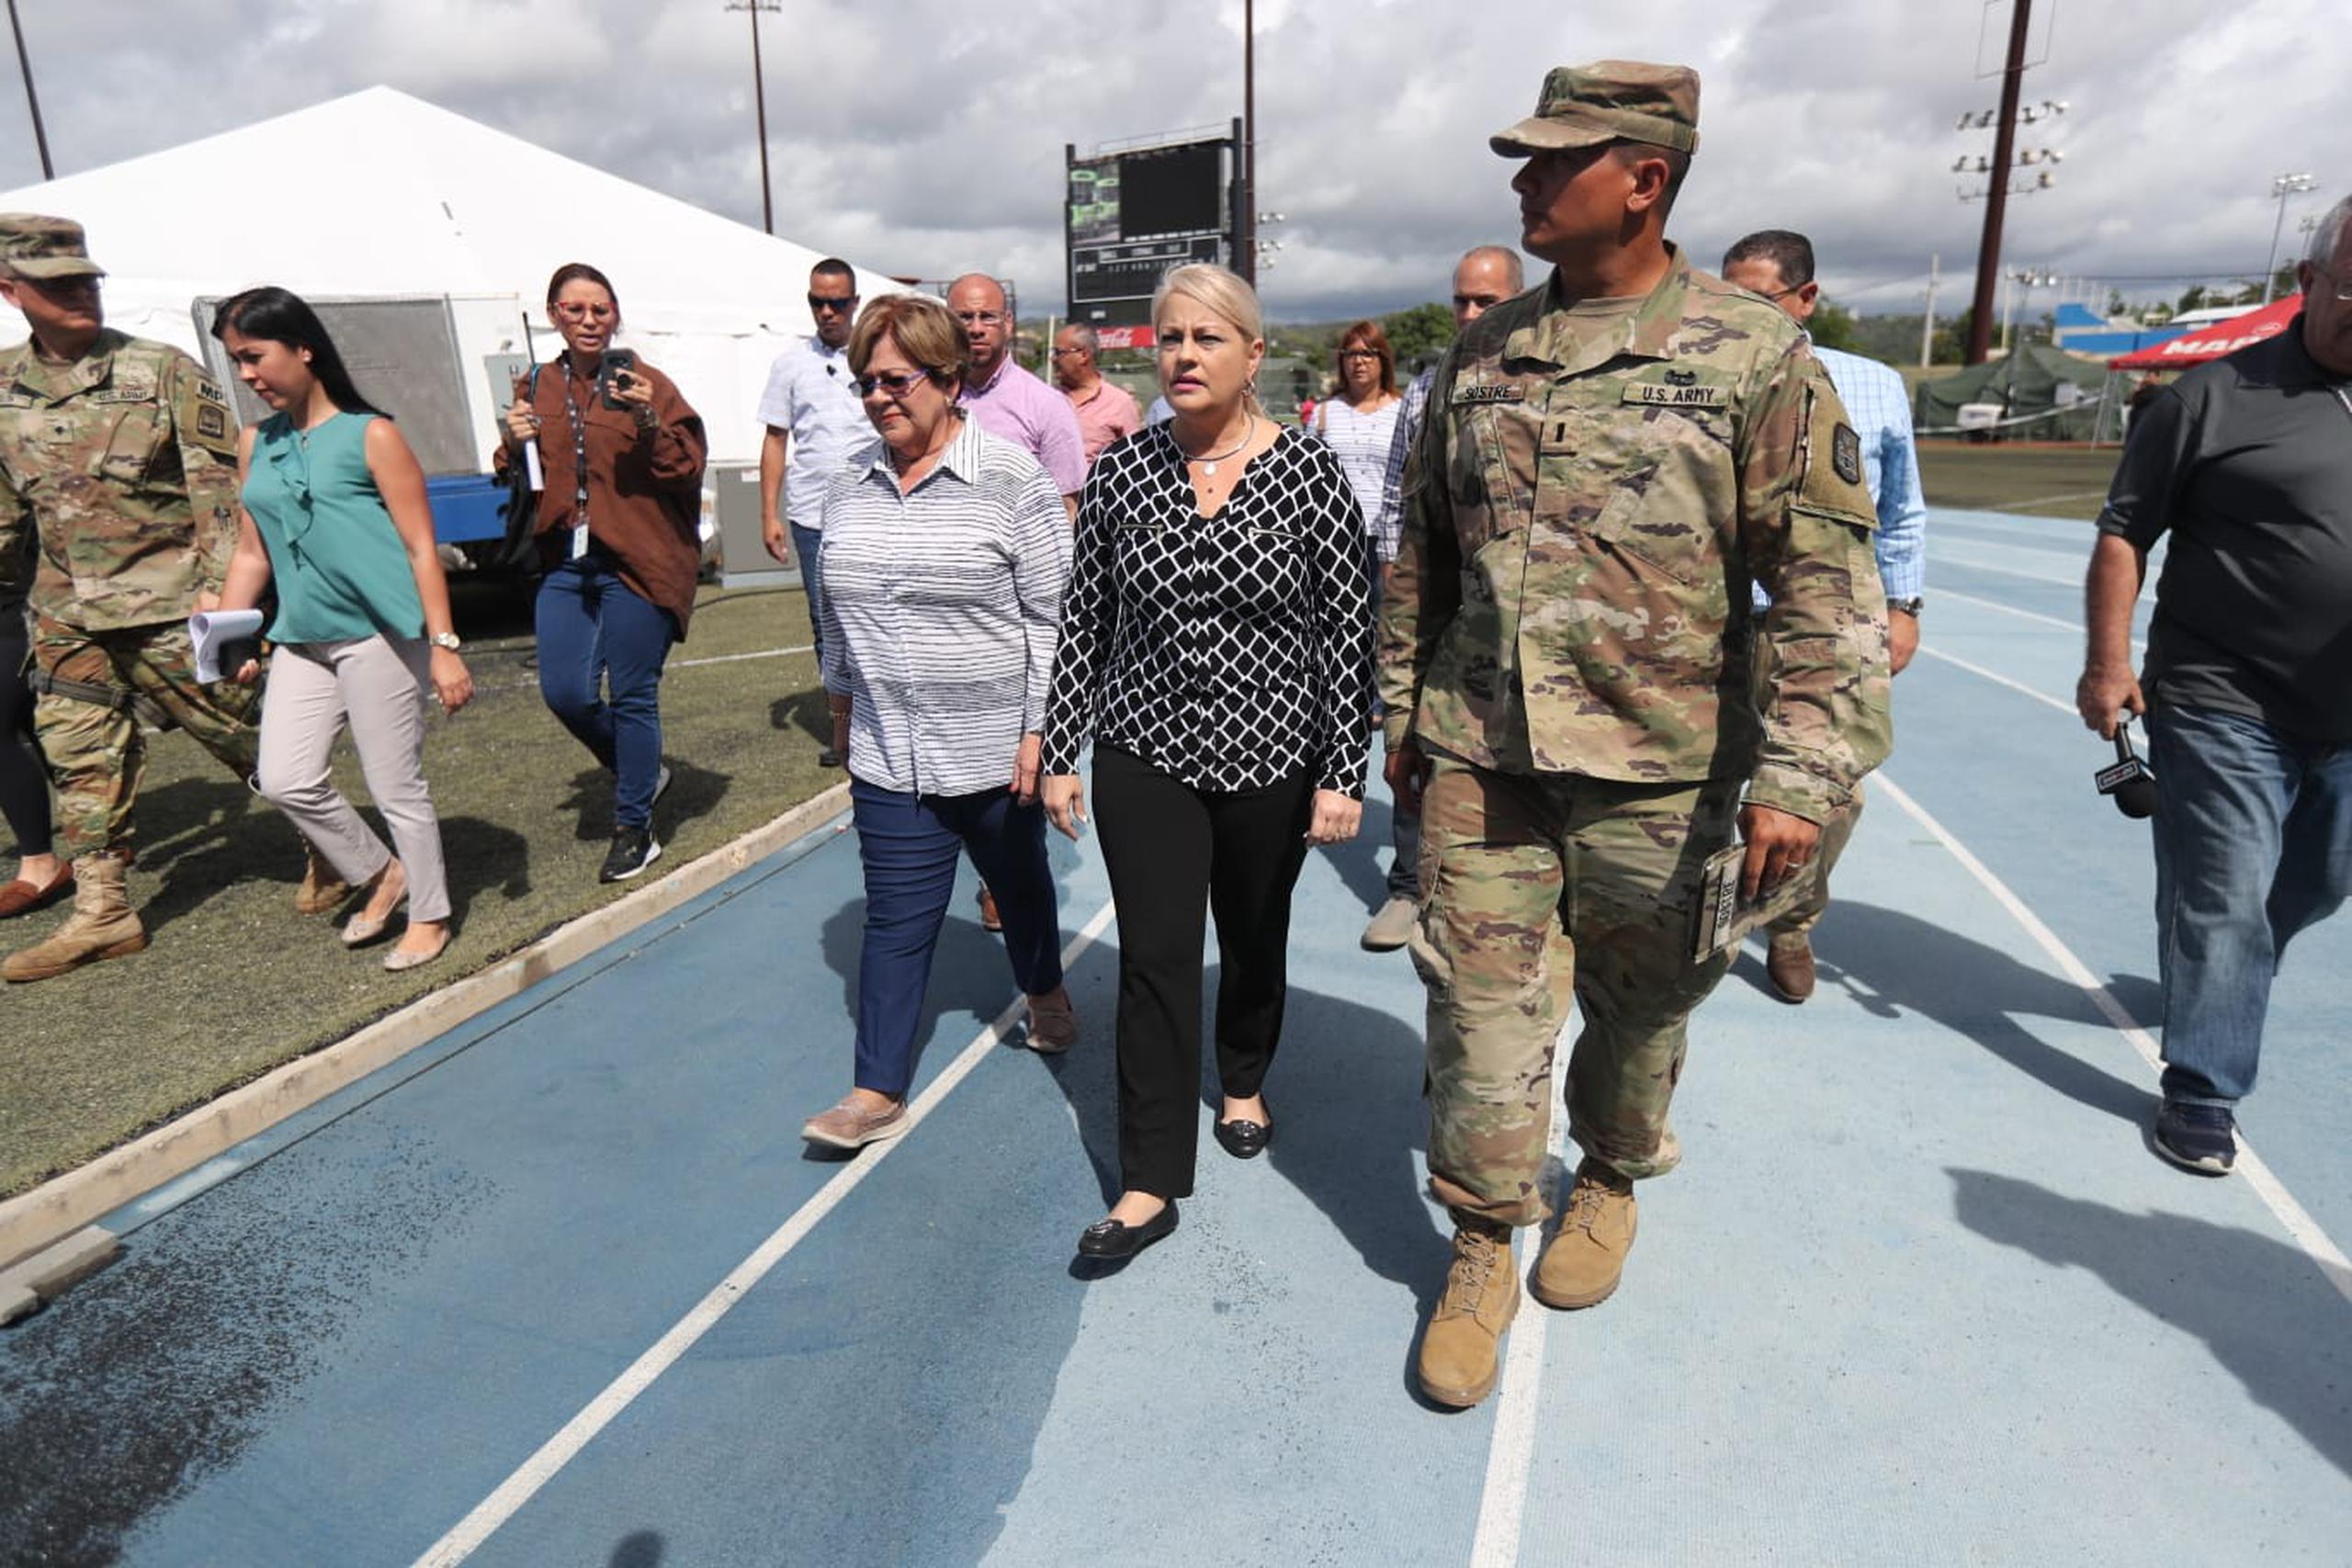 La gobernadora Wanda Vázquez Garced visita el campamento base de Ponce. En la foto, junto a la alcaldesa María "Mayita" Meléndez.